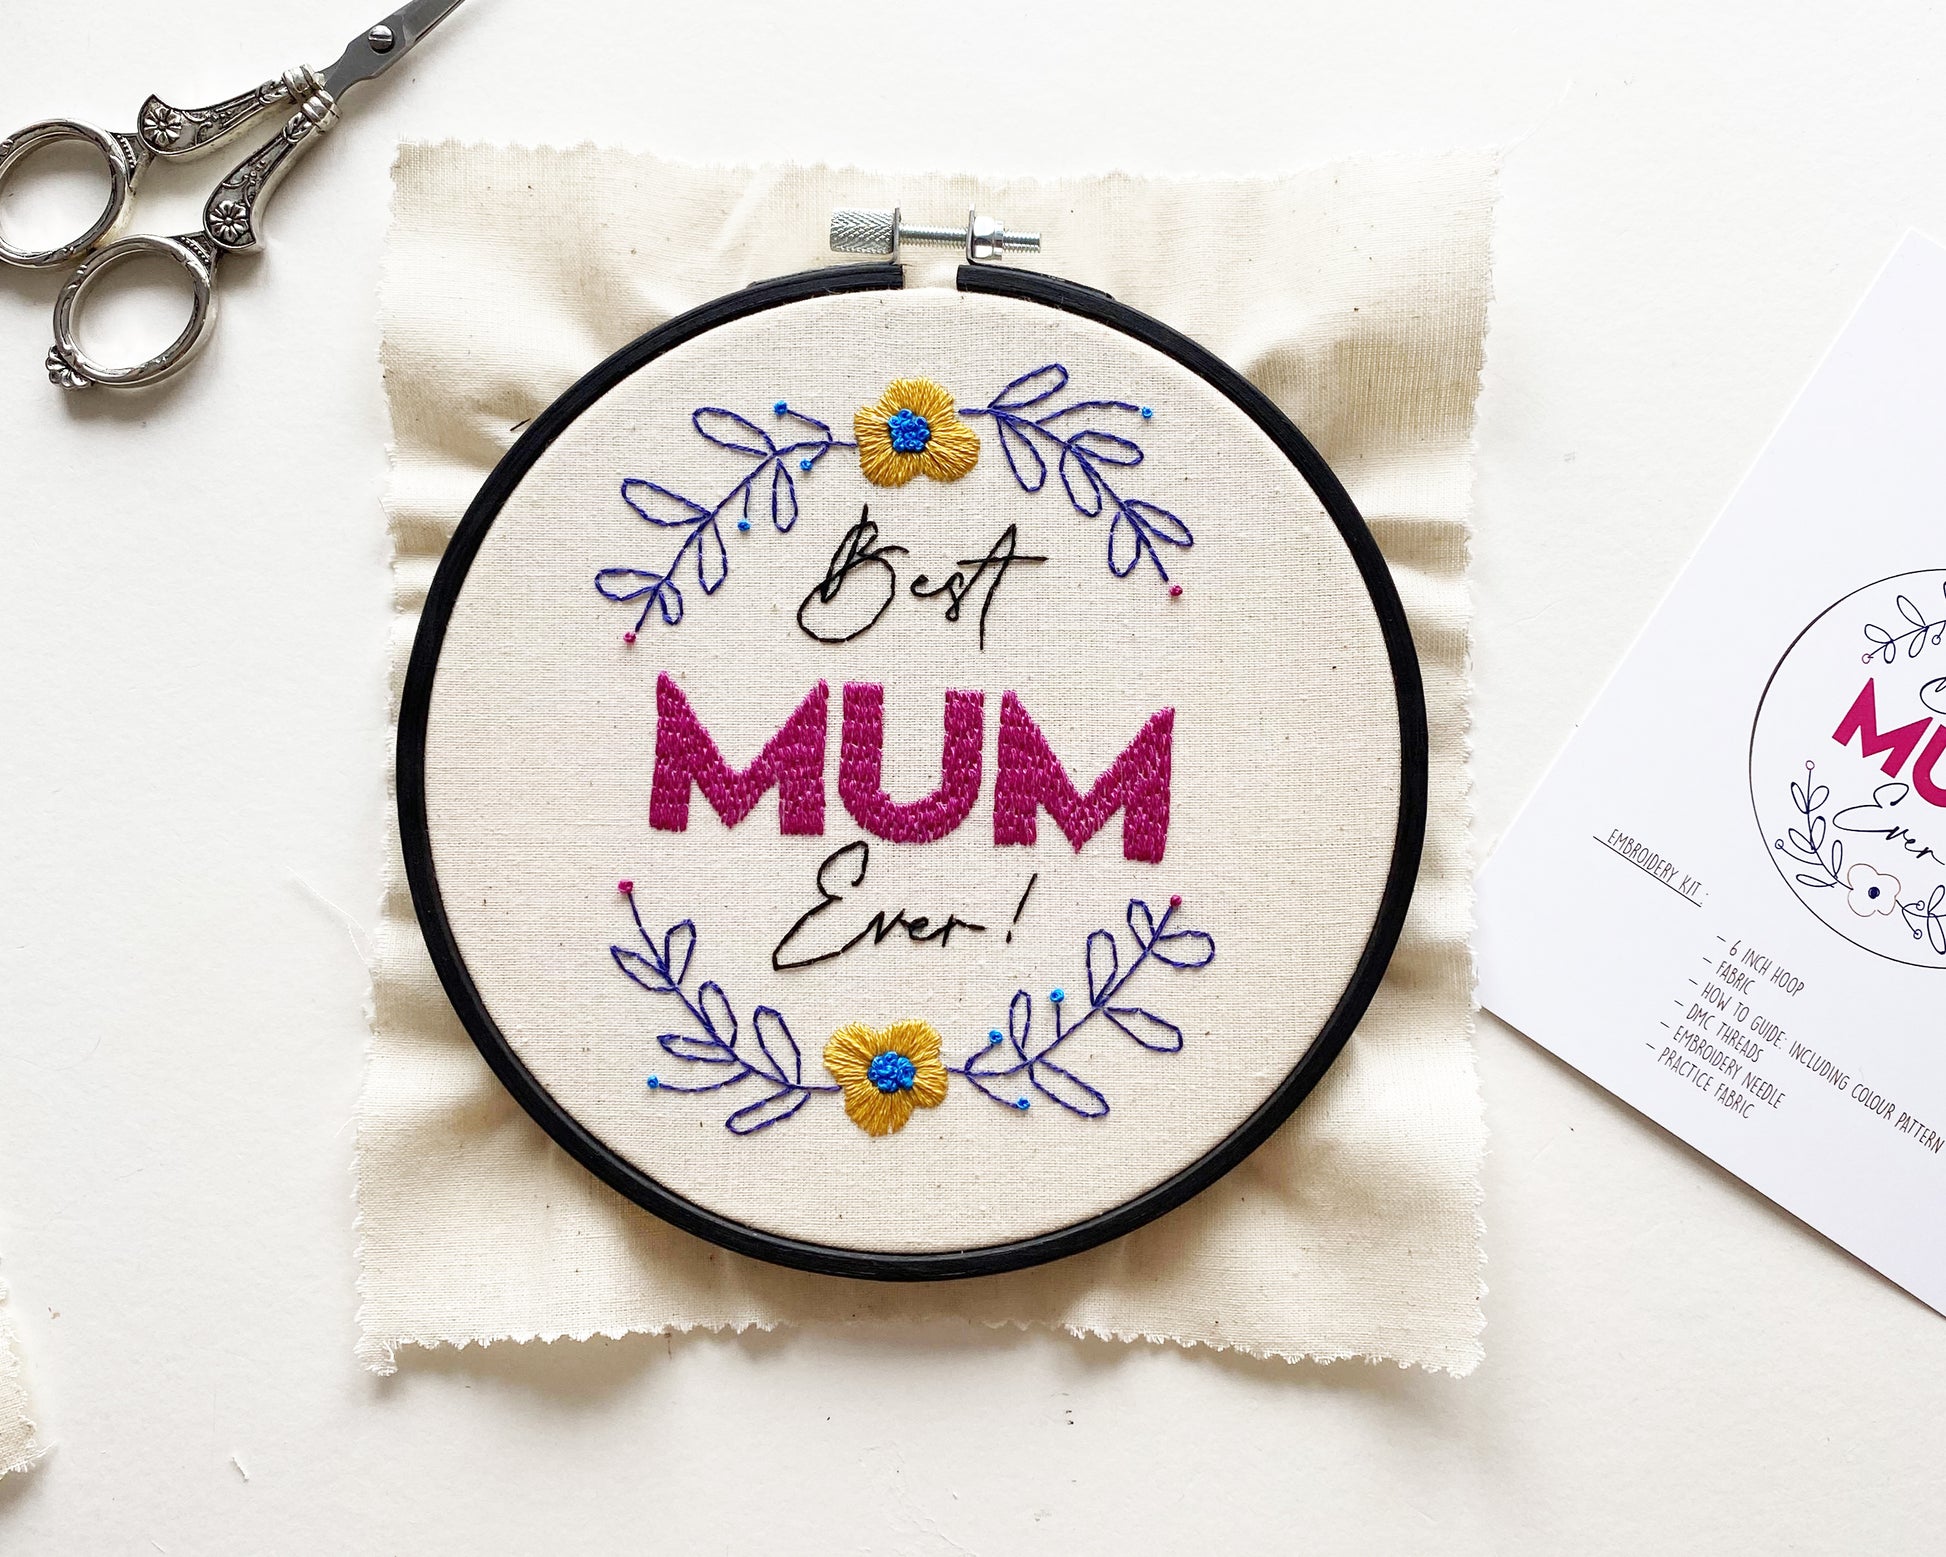 World's Best Mom Cross Stitch Beginner Kit. Best Mom Ever 